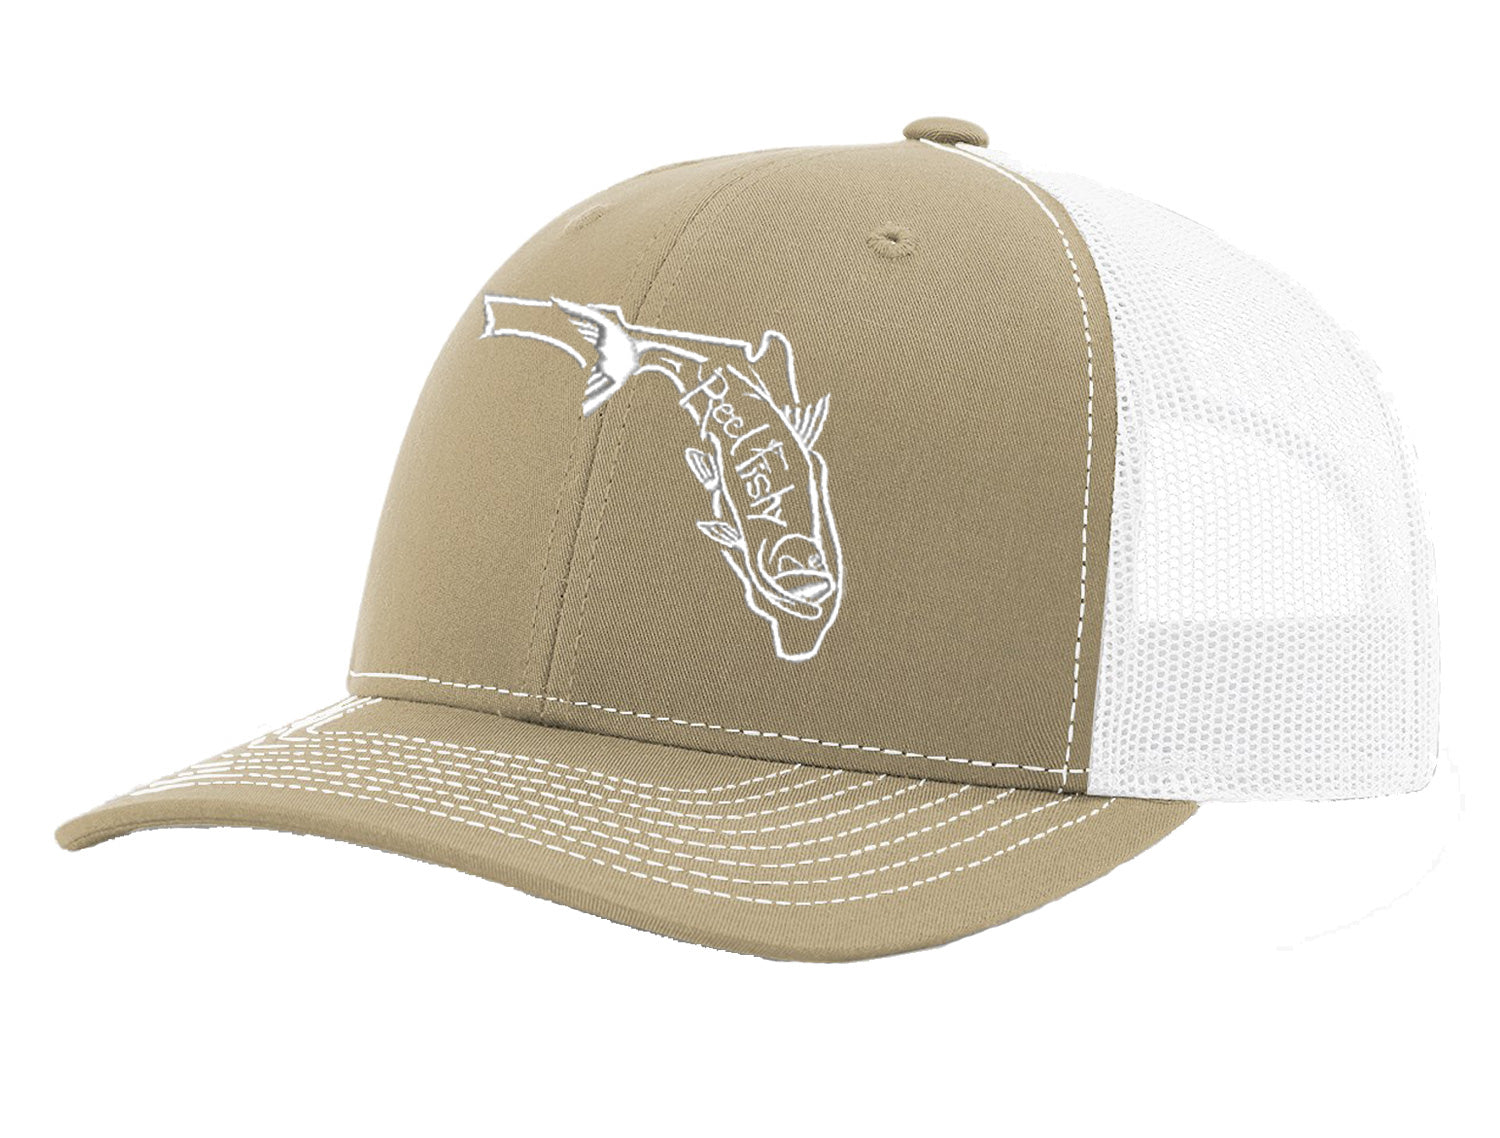 State of Florida Tarpon Reel Fishy Logo - Khaki/White Trucker hat w/White Logo